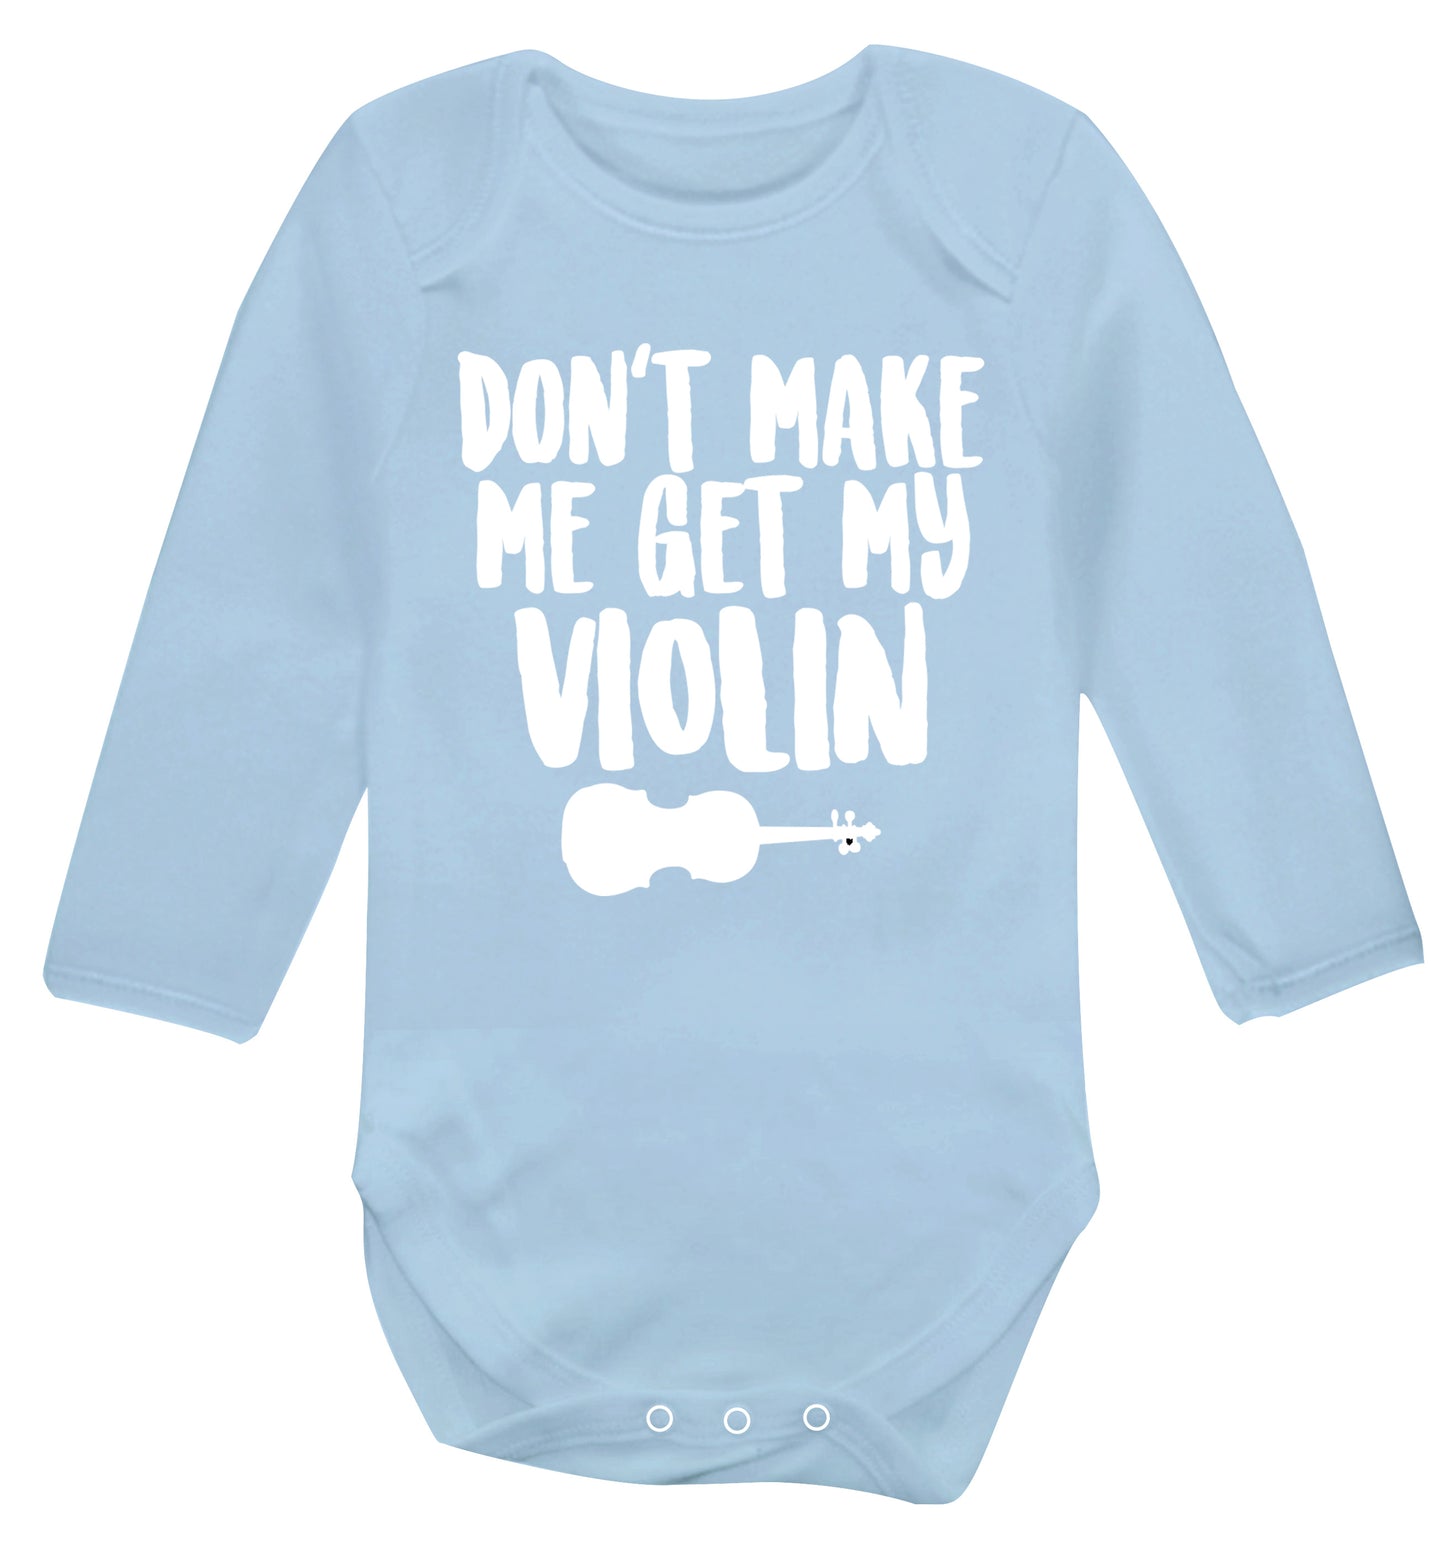 Don't make me get my violin Baby Vest long sleeved pale blue 6-12 months